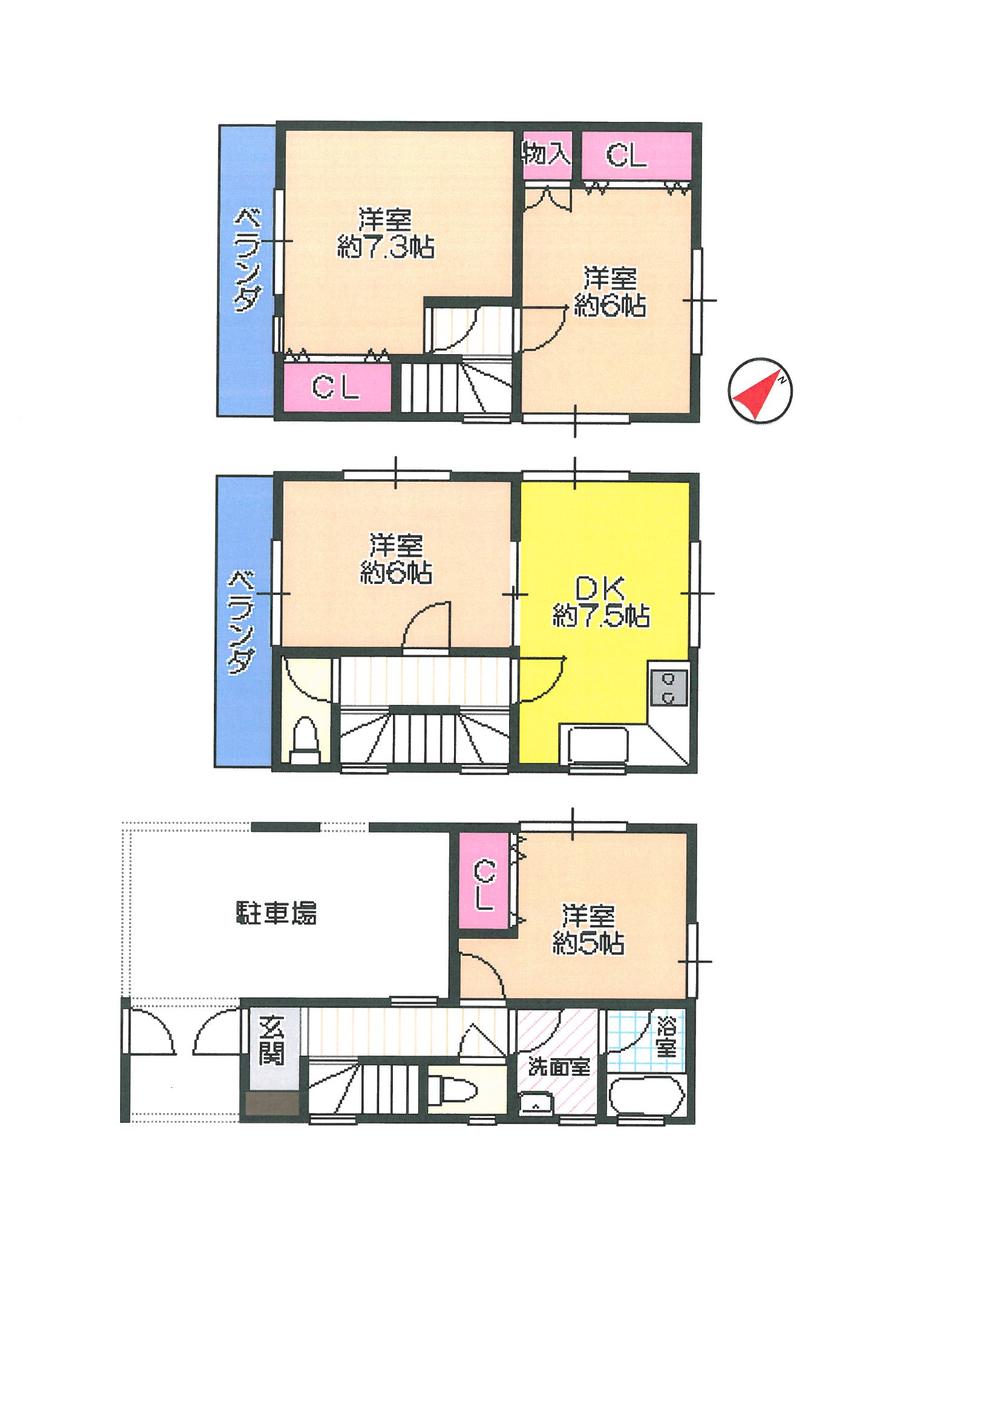 Floor plan. 32,900,000 yen, 4DK, Land area 49.8 sq m , Building area 78.97 sq m